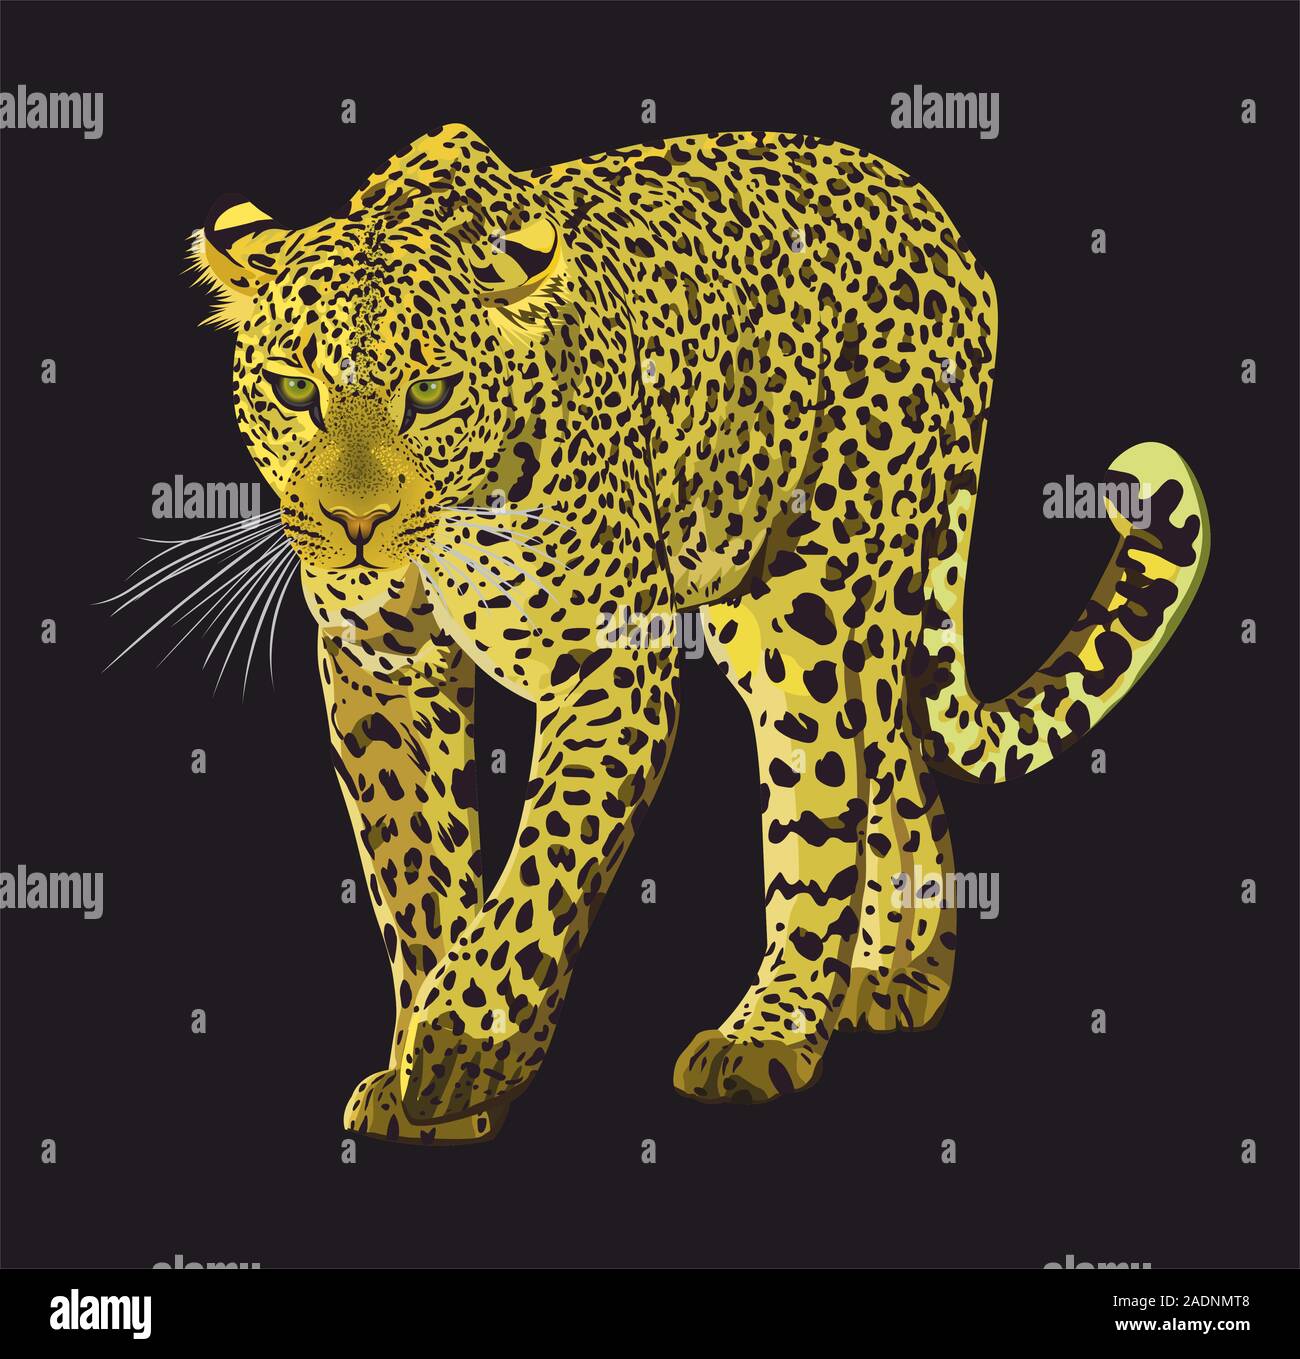 Camminare leopard graphic design isolato su sfondo nero. Animali disegnati a mano illustrazione. - Vettore Illustrazione Vettoriale